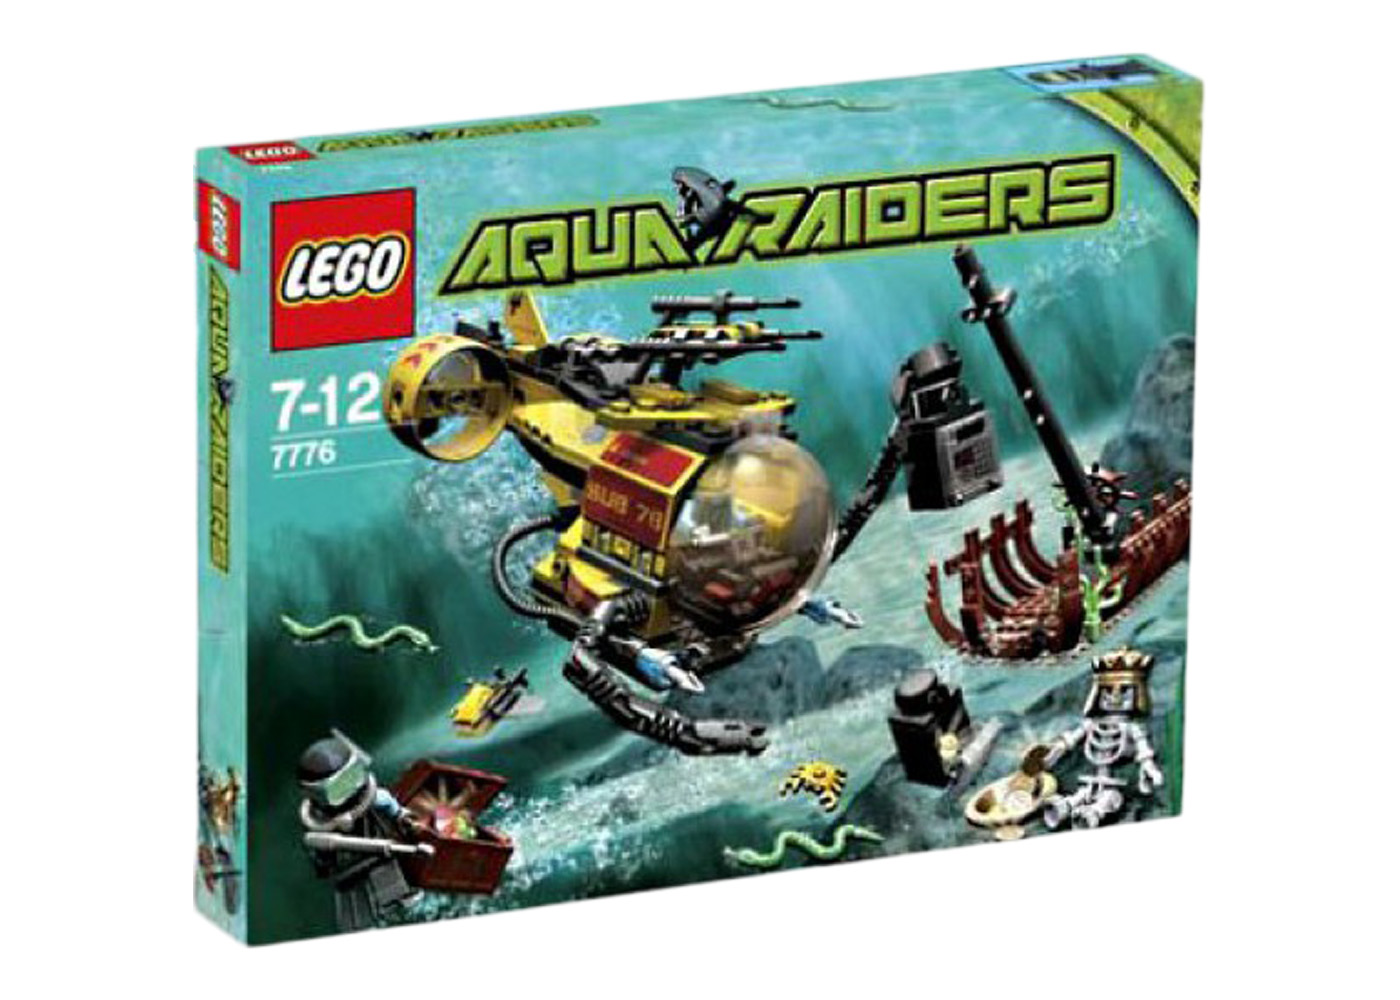 LEGO Aqua Raiders The Shipwreck Set 7776